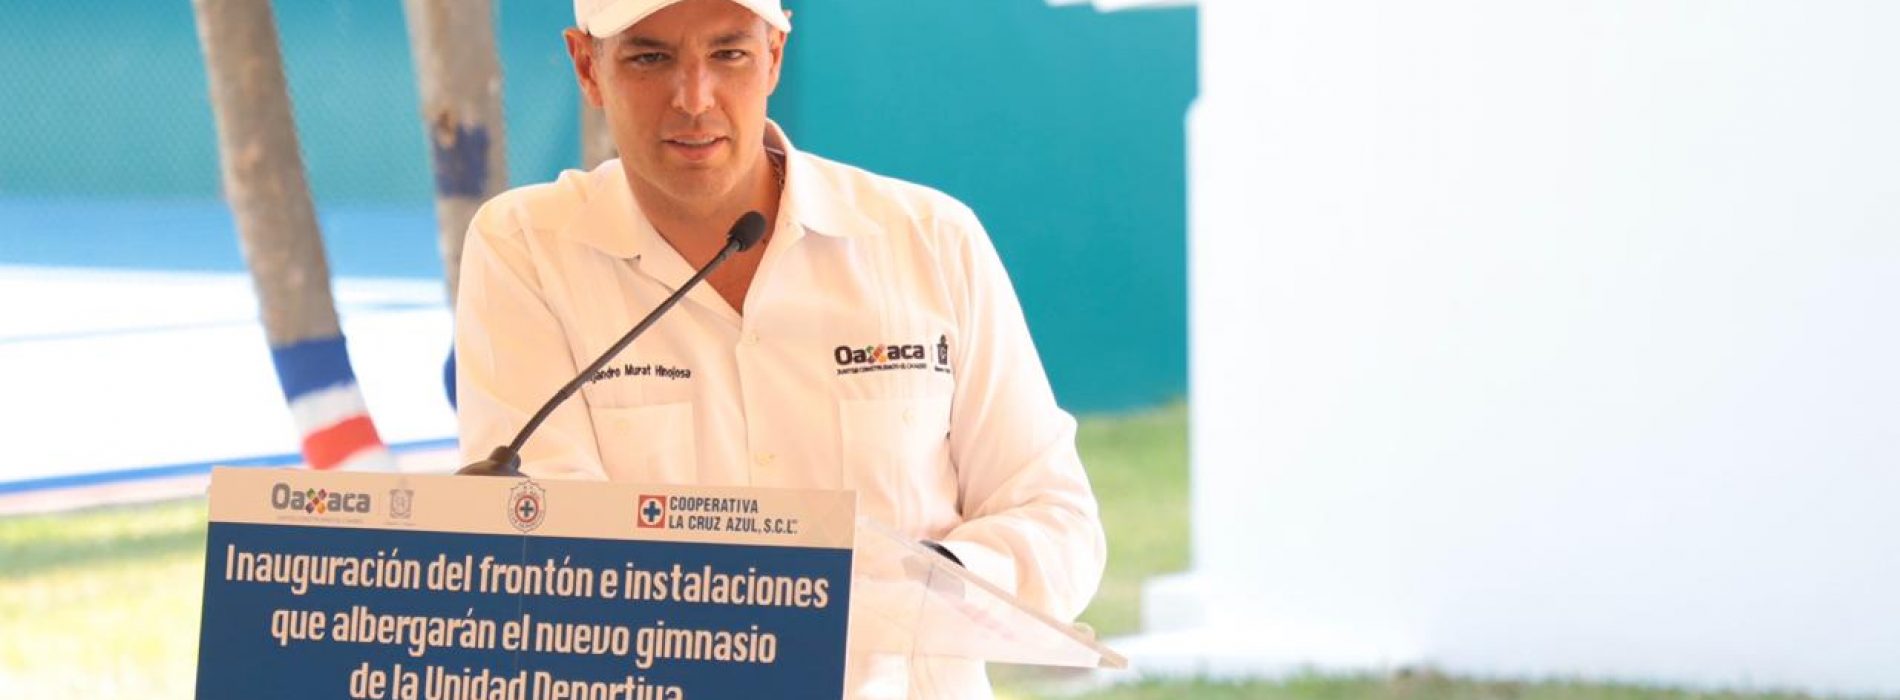 Desarrollo industrial, parte esencial para el crecimiento de Oaxaca: AMH